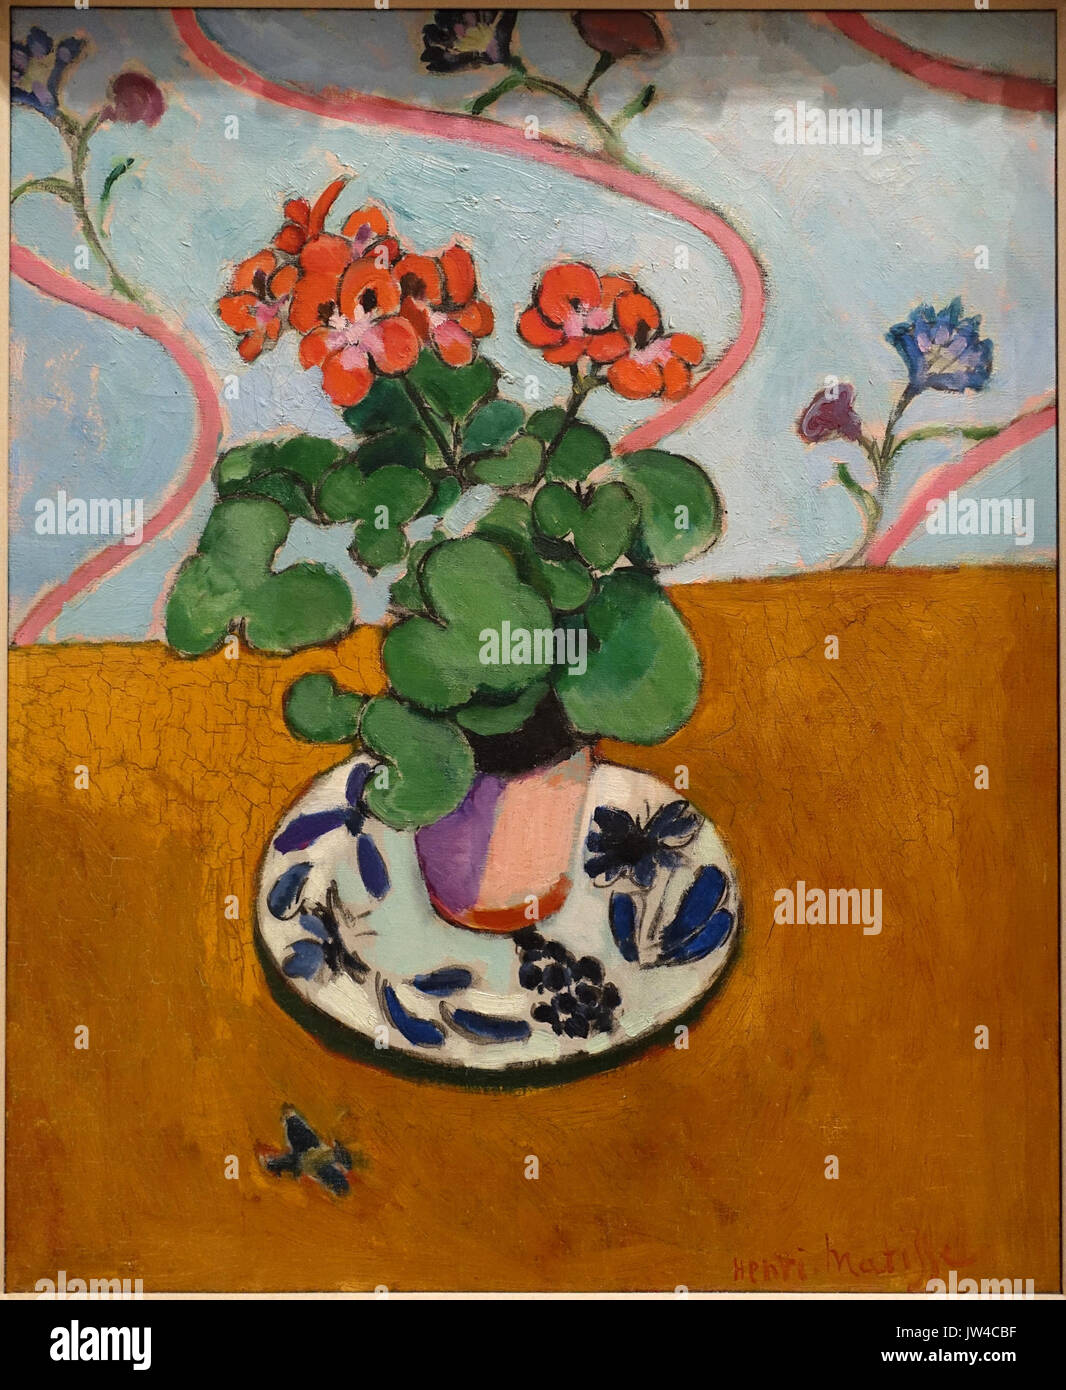 Géraniums par Henri Matisse, 1910, huile sur toile Fogg Art Museum, Harvard University DSC00712 Banque D'Images